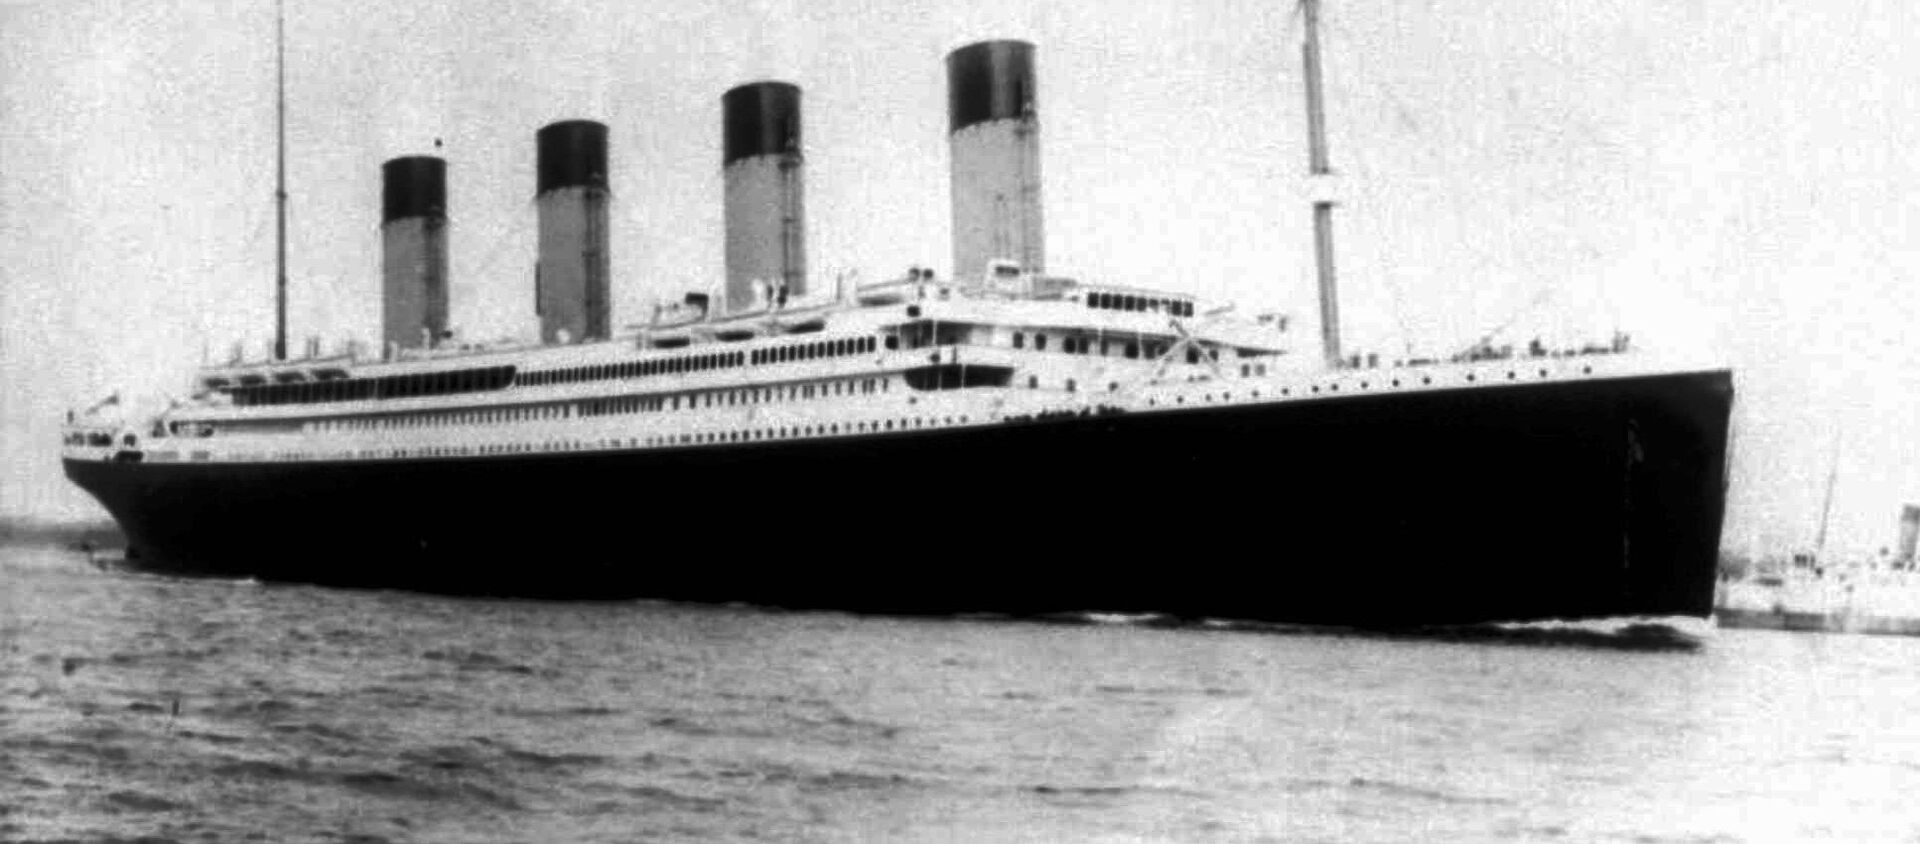 سفينة تايتانيك العملاقة - سبوتنيك عربي, 1920, 22.08.2019